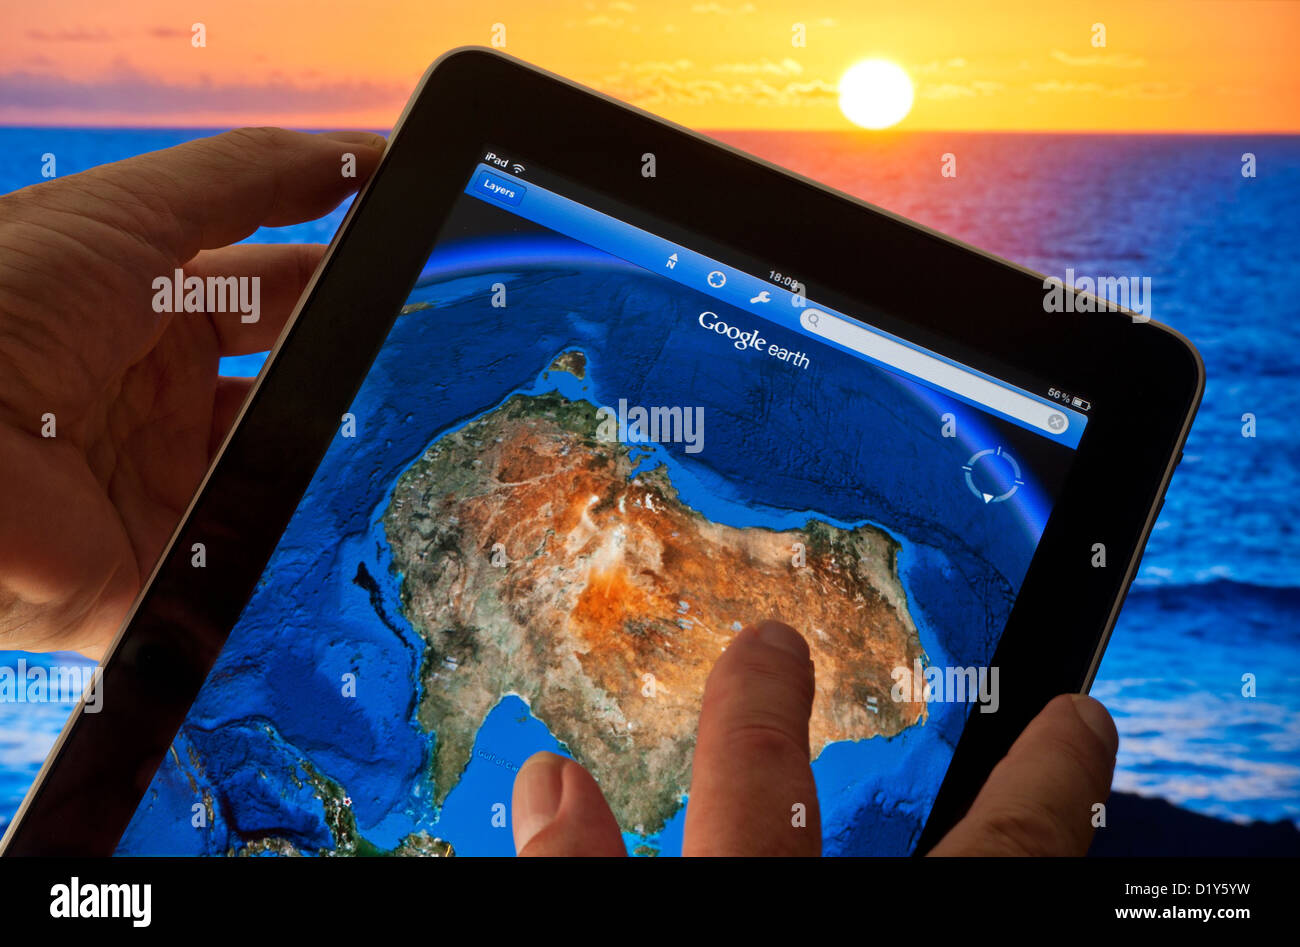 IPad GOOGLE EARTH AUSTRALIEN Hände halten Apple iPad Smart Tablet Meereskontur auf dem Bildschirm mit Karte des südlichen Pazifiks von Australien & Indische Ozeane Stockfoto